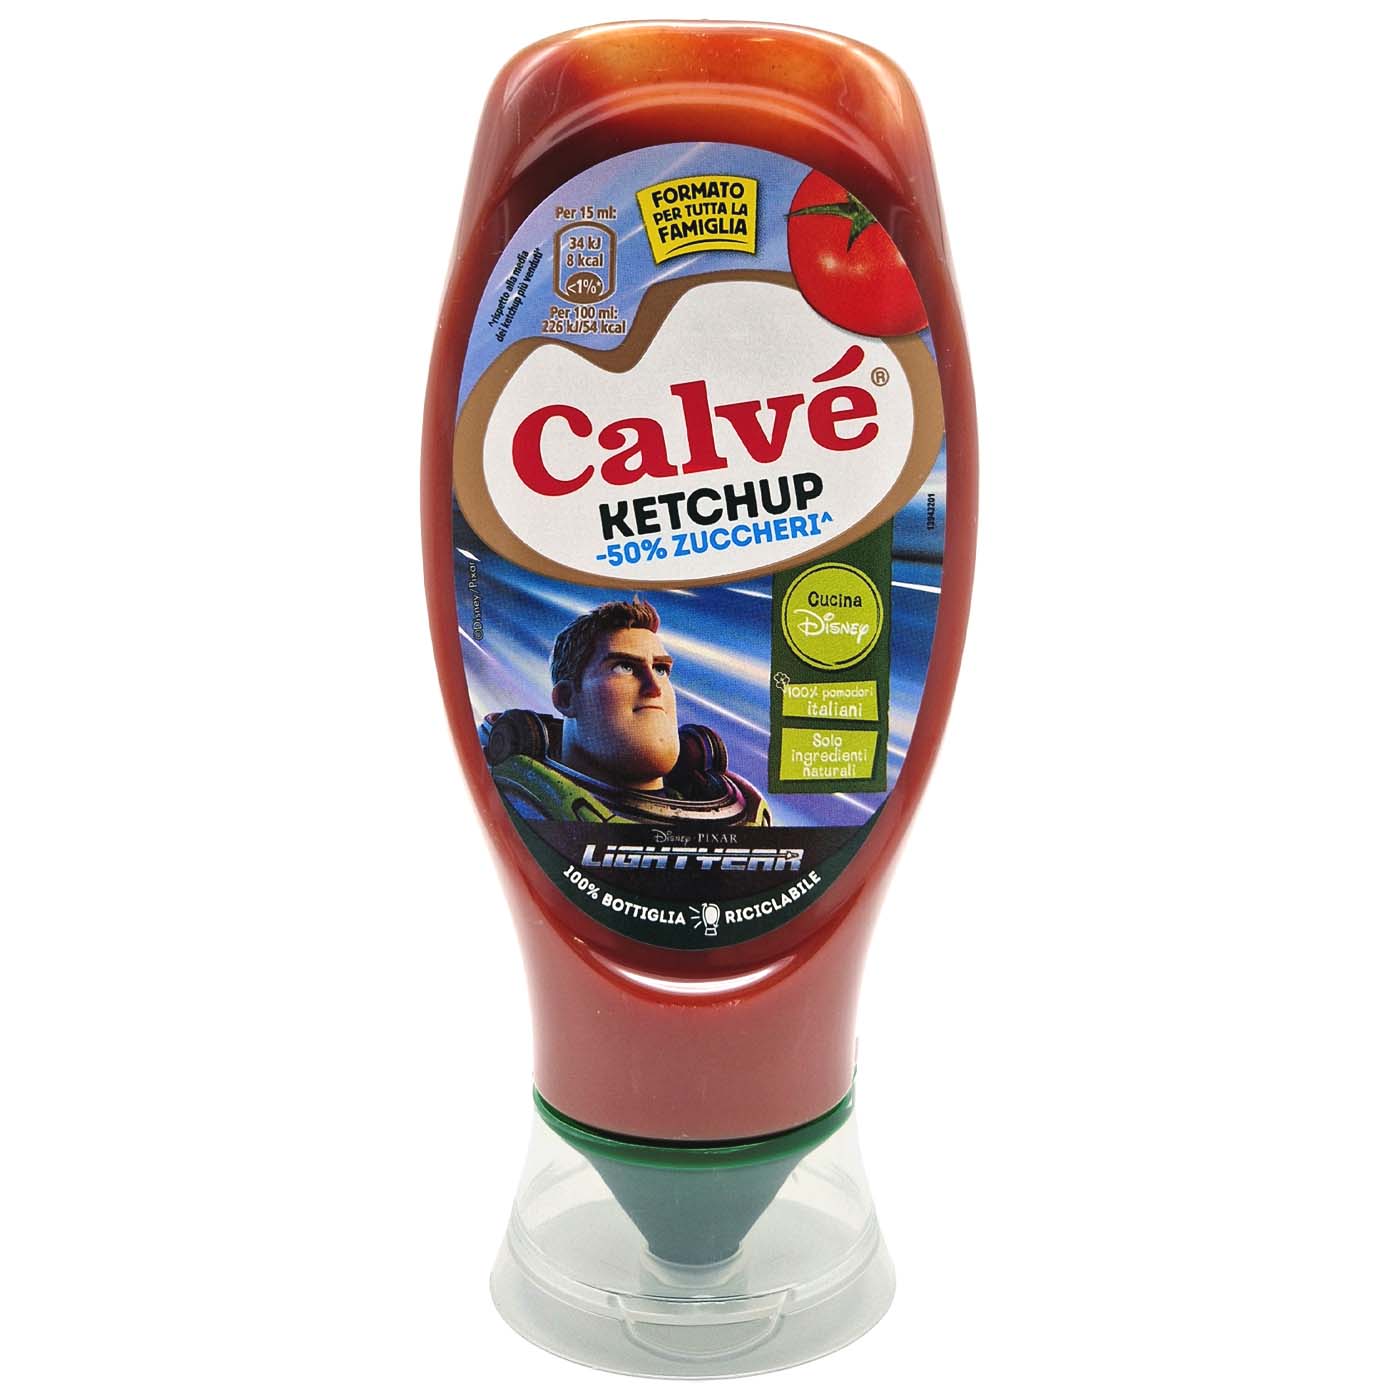 CALVÉ Ketchup - Ketchup Sauce 50% weniger Zucker - 0,430l - italienisch - einkaufen.de